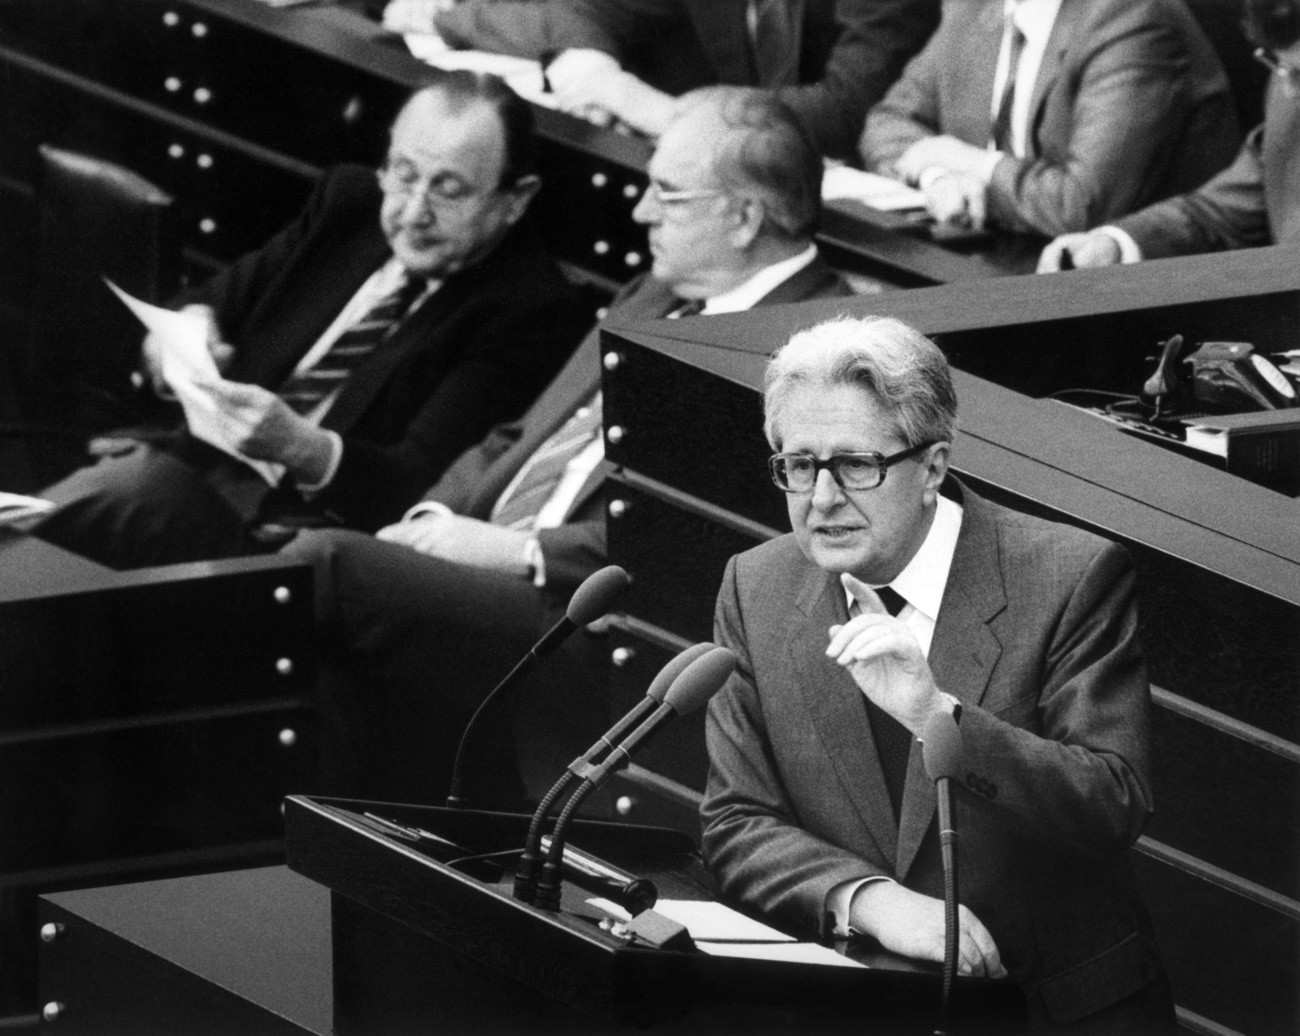 Der SPD-Politiker war von 1960 bis 1972 Oberbürgermeister von Berlin. Von 1972 bis 1974 war er Bundesminister für Raumordnung, Bauwesen und Städtebau, danach bis 1981 Bundesminister der Justiz und im Jahr 1981 Regierender Bürgermeister von Berlin. Bei der Bundestagswahl 1983 war er Kanzlerkandidat der SPD, scheiterte jedoch an Helmut Kohl. Von 1987 bis 1991 war er als Nachfolger Willy Brandts Parteivorsitzender der SPD und von 1983 bis 1991 in der Nachfolge Herbert Wehners Vorsitzender der SPD-Bundestagsfr…